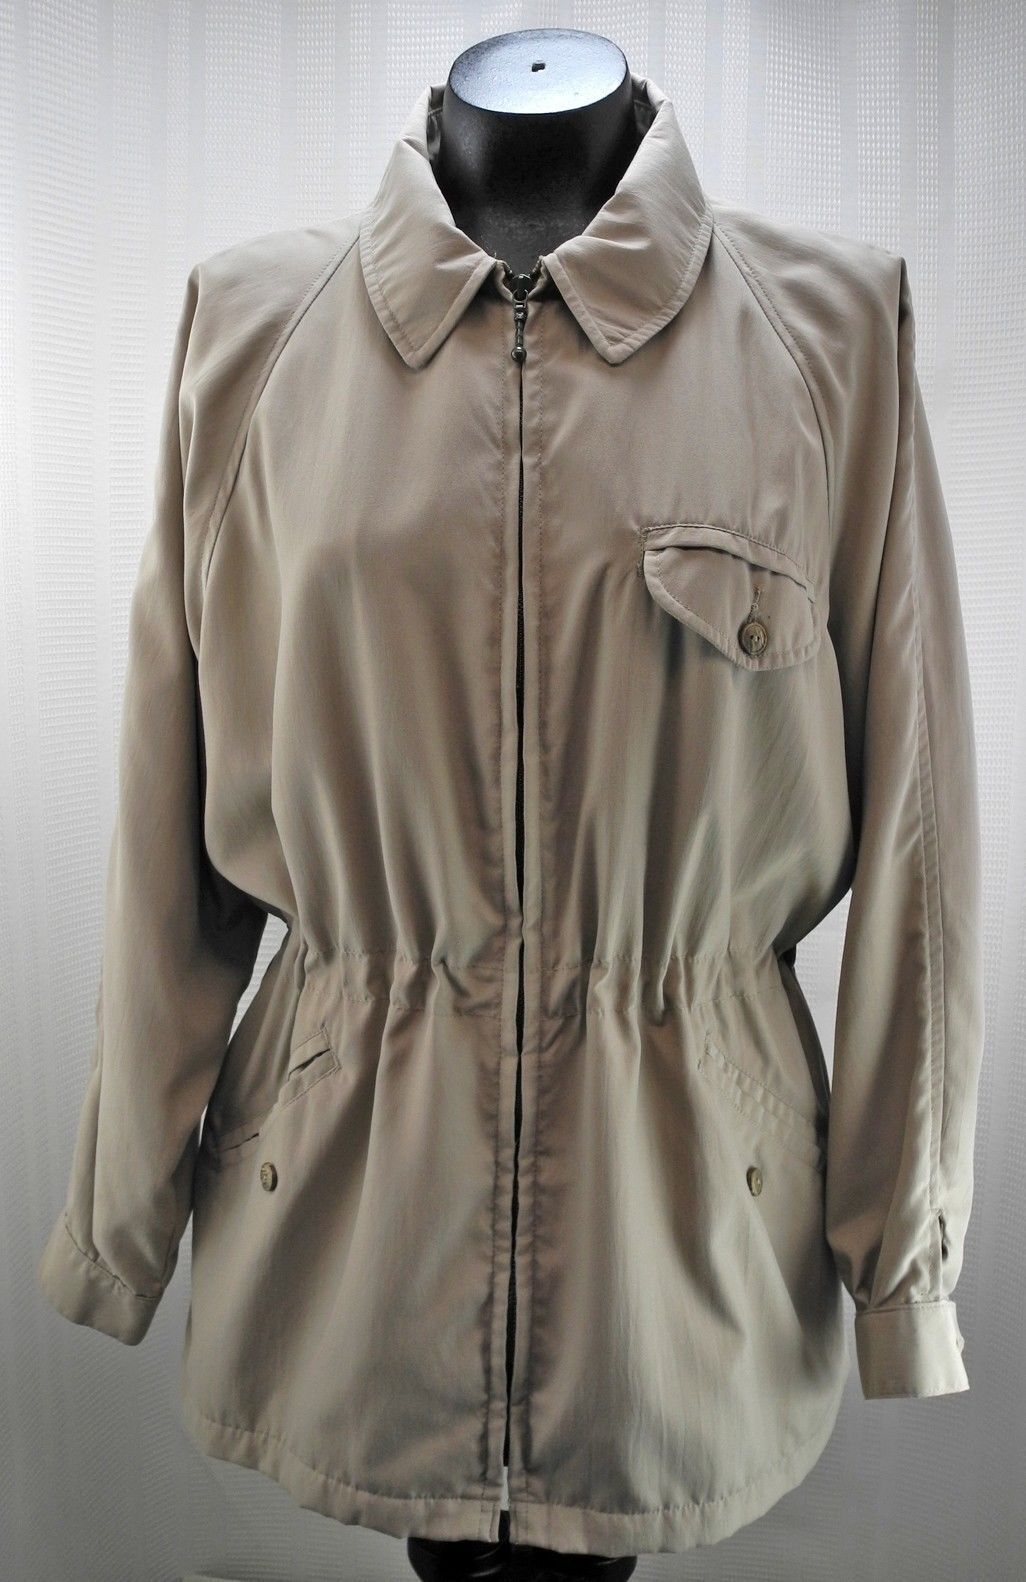 Tænk fremad Brandmand Spole tilbage Lands' End Tan Zip Front Car Coat - Drawstring Waist - Women's Jacket Small  6-8 | eBay